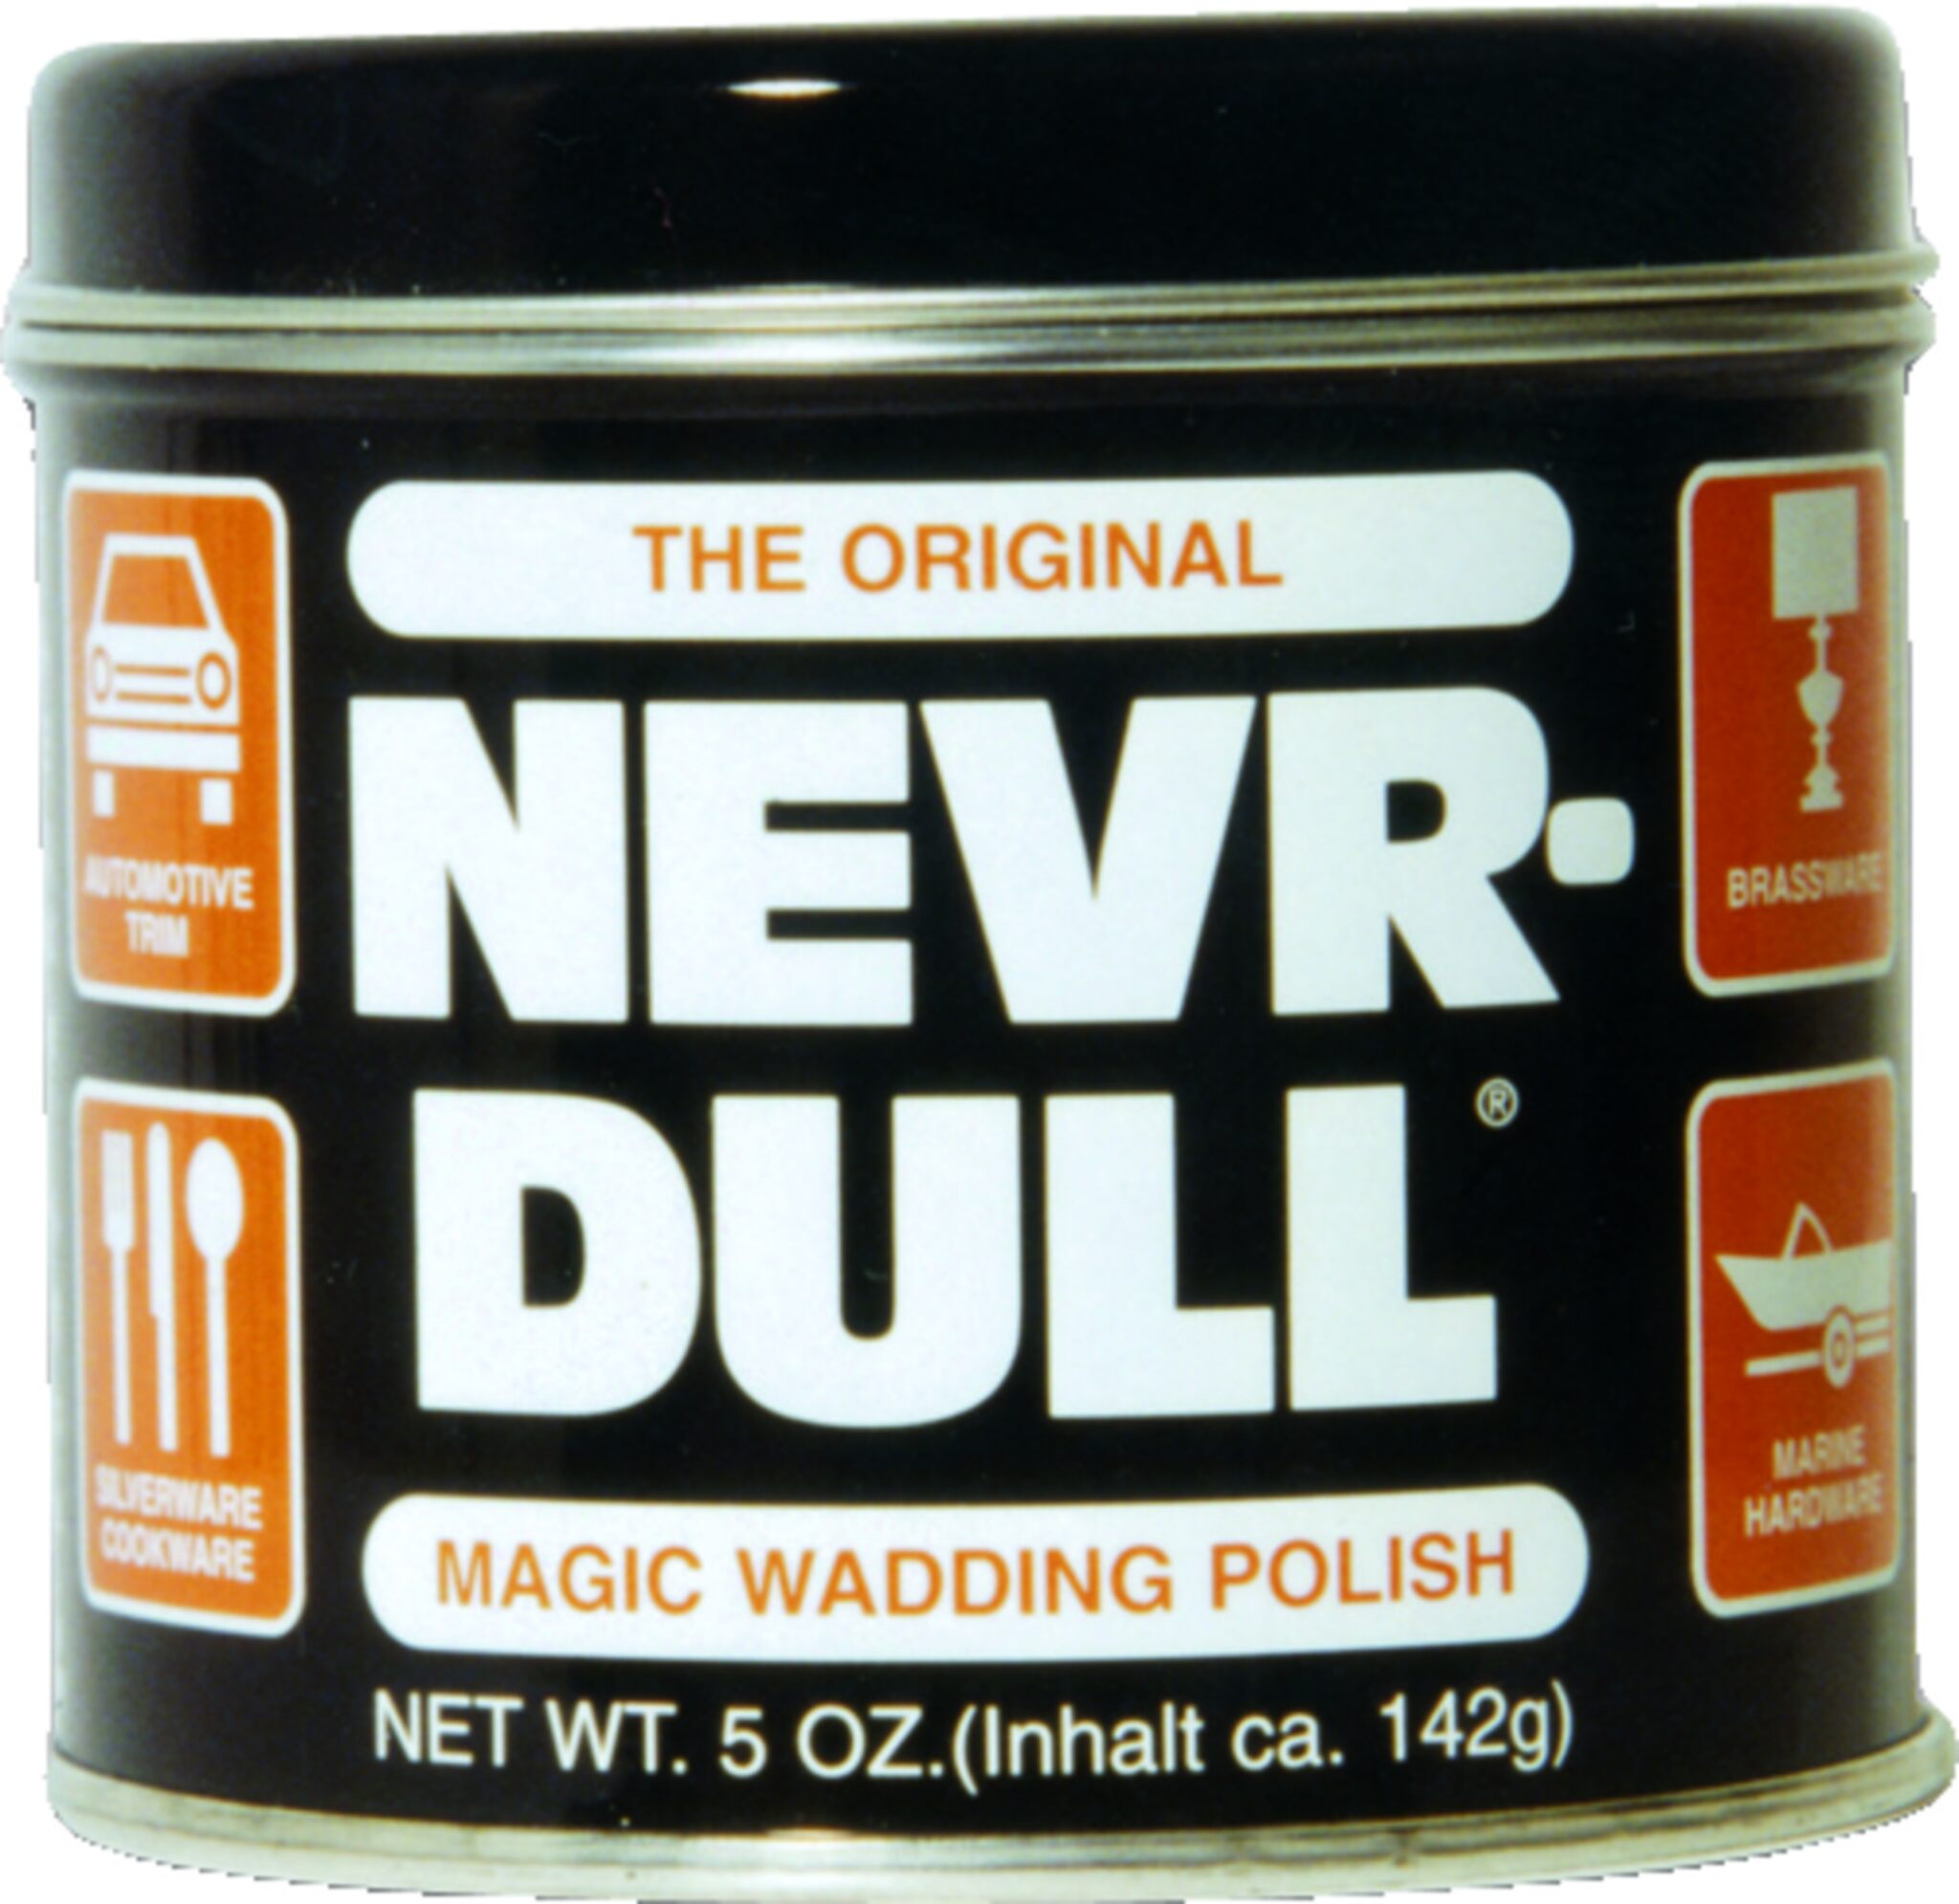 NEVR-DULL Metal High Gloss Polishing Wadding